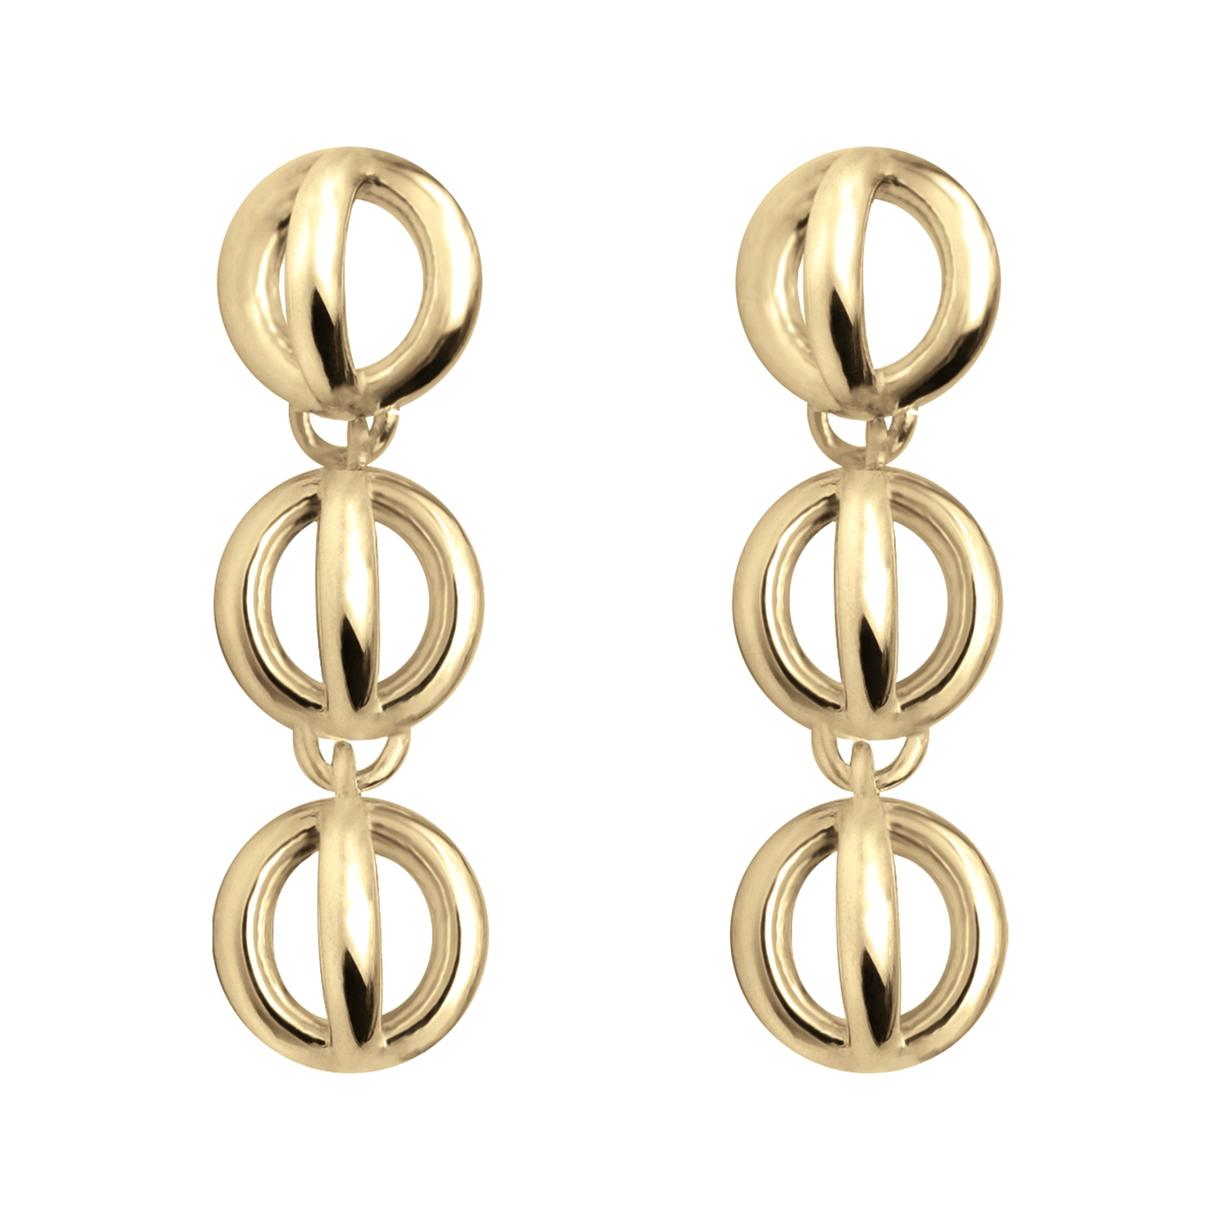 Sapir Bachar Gold Long Dome Earrings